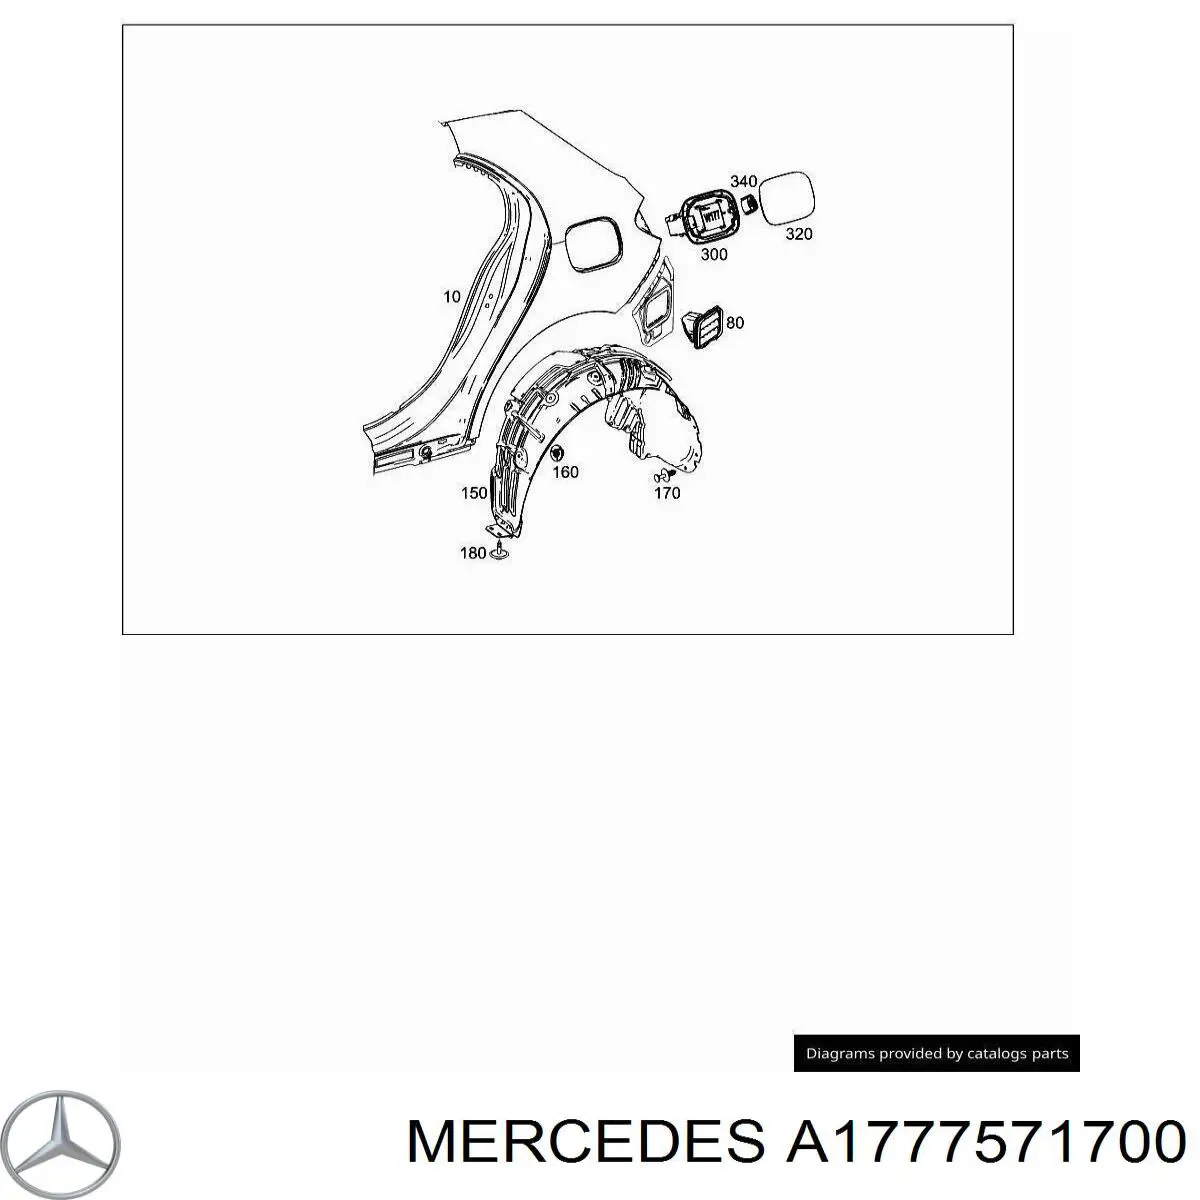 A1777571700 Mercedes лючок бензобака (топливного бака)